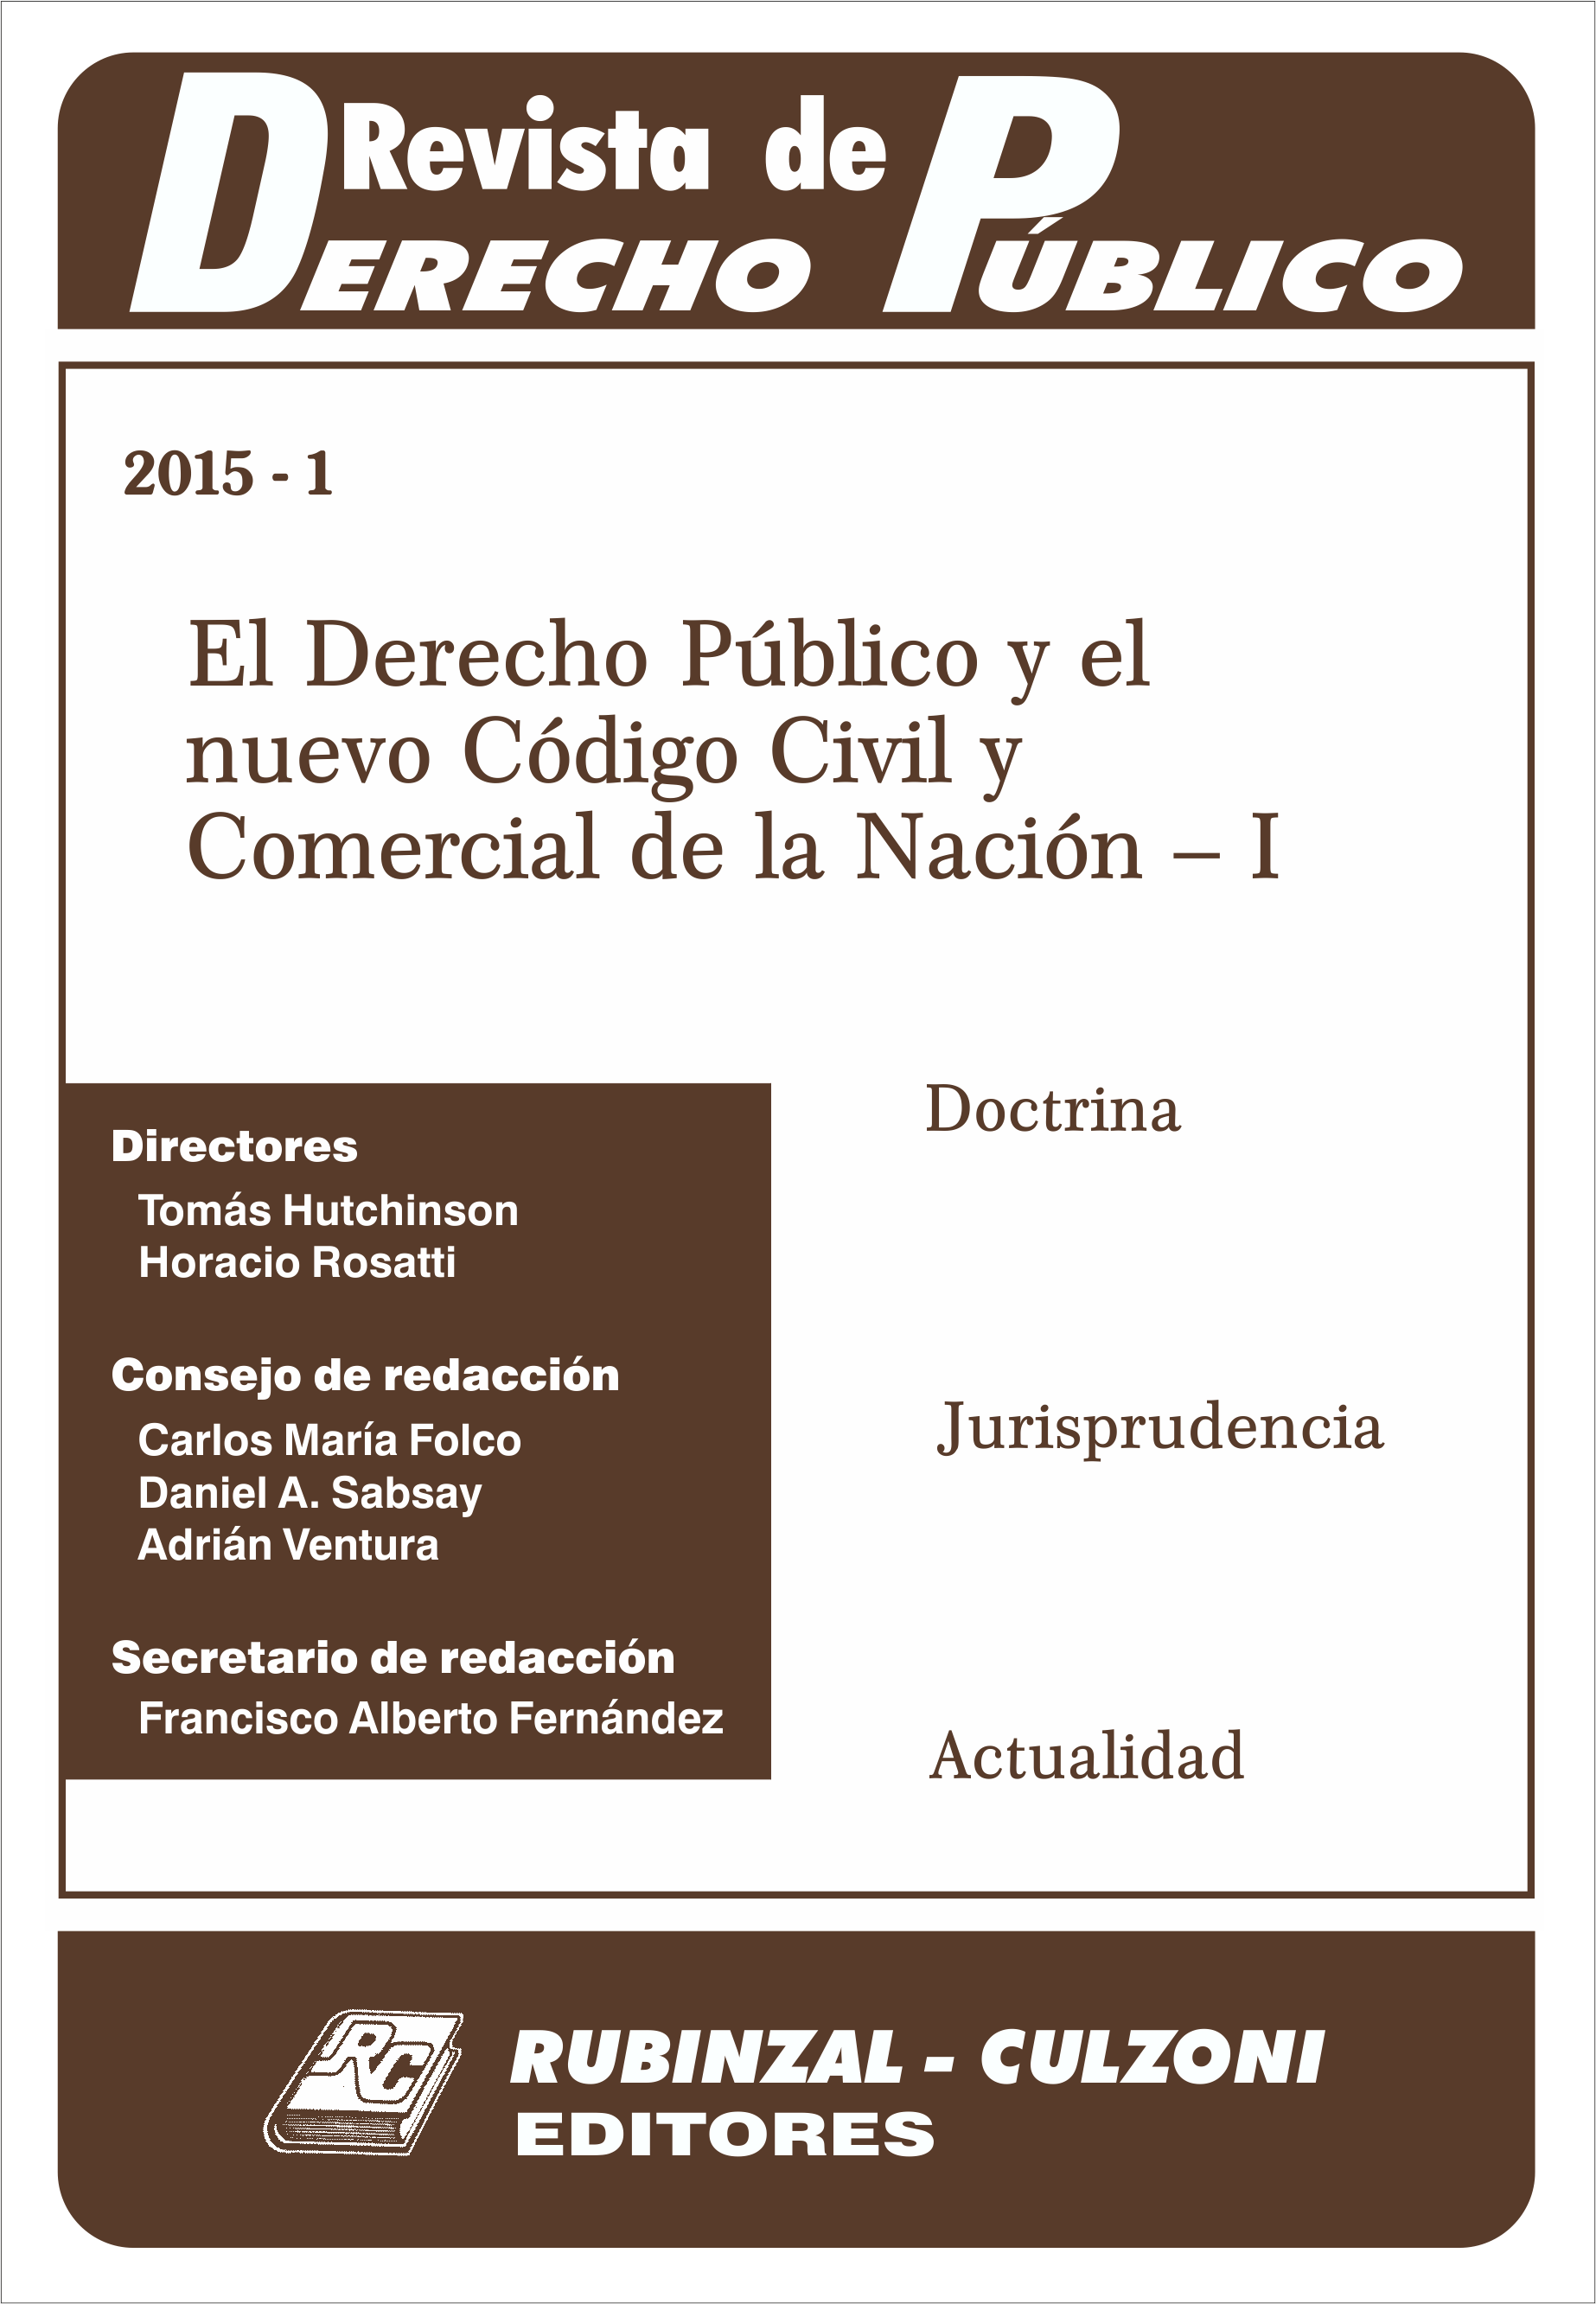 El Derecho Público y el nuevo Código Civil y Comercial de la Nación - I. [2015-1]